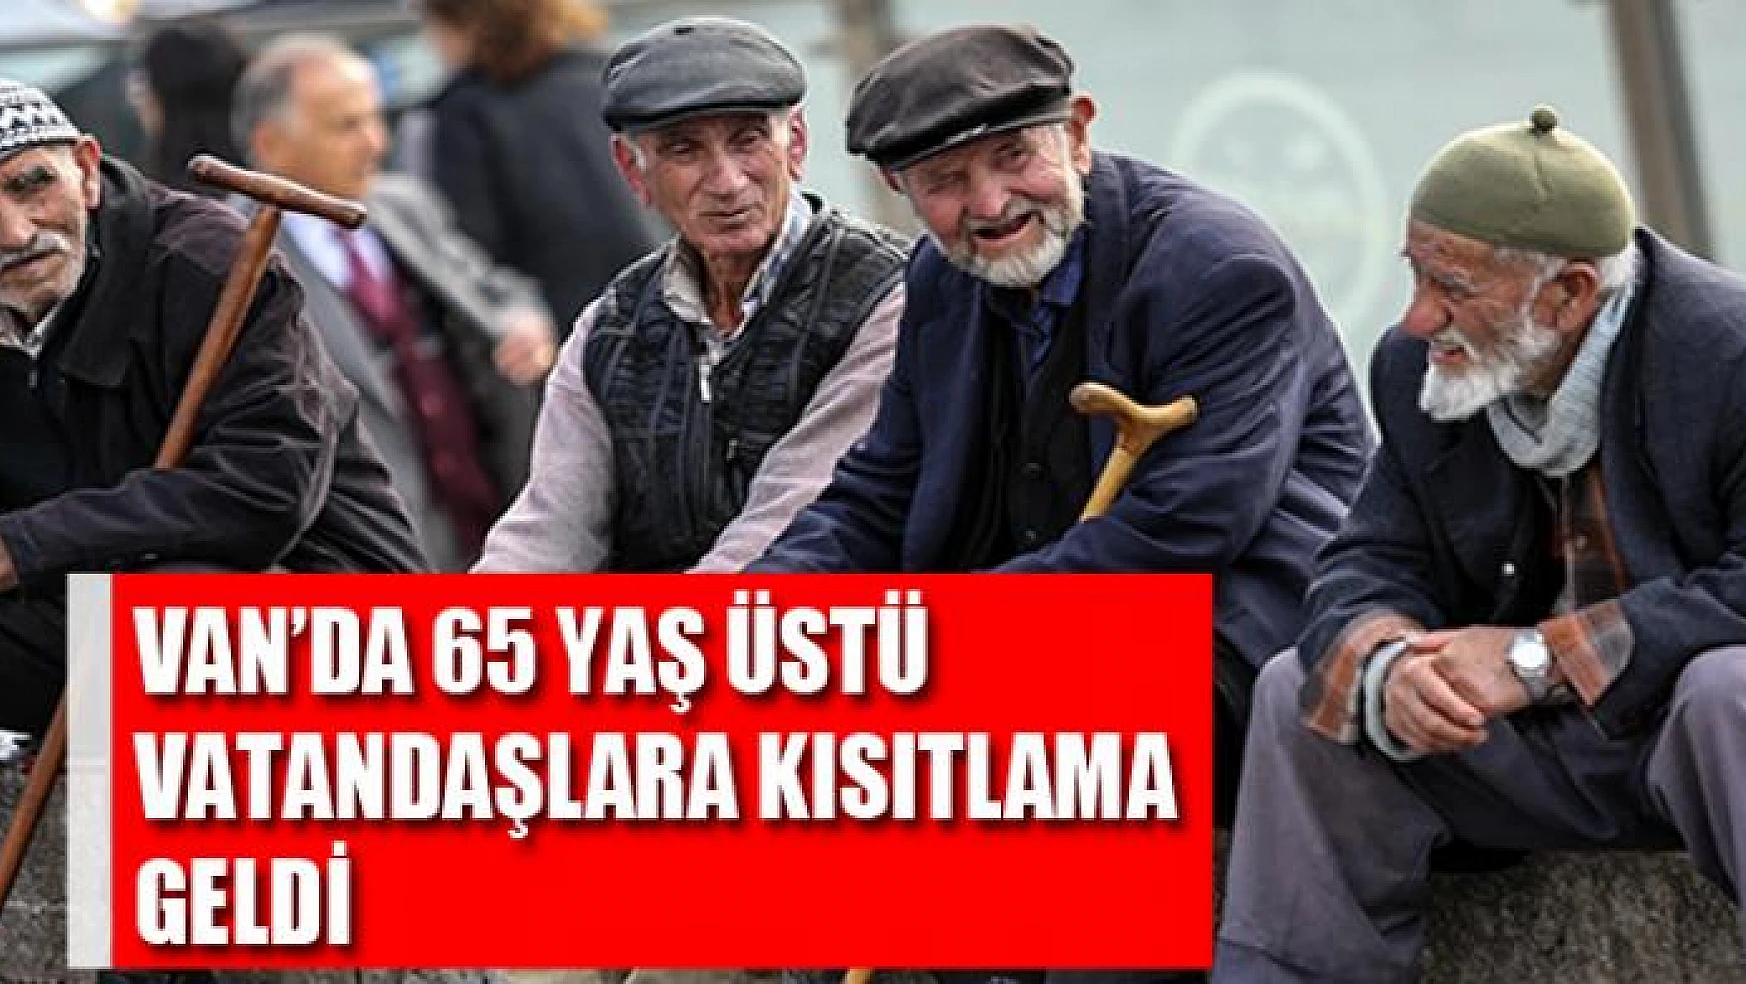 VAN'DA 65 YAŞ ÜSTÜ VATANDAŞLARA KISITLAMA GELDİ